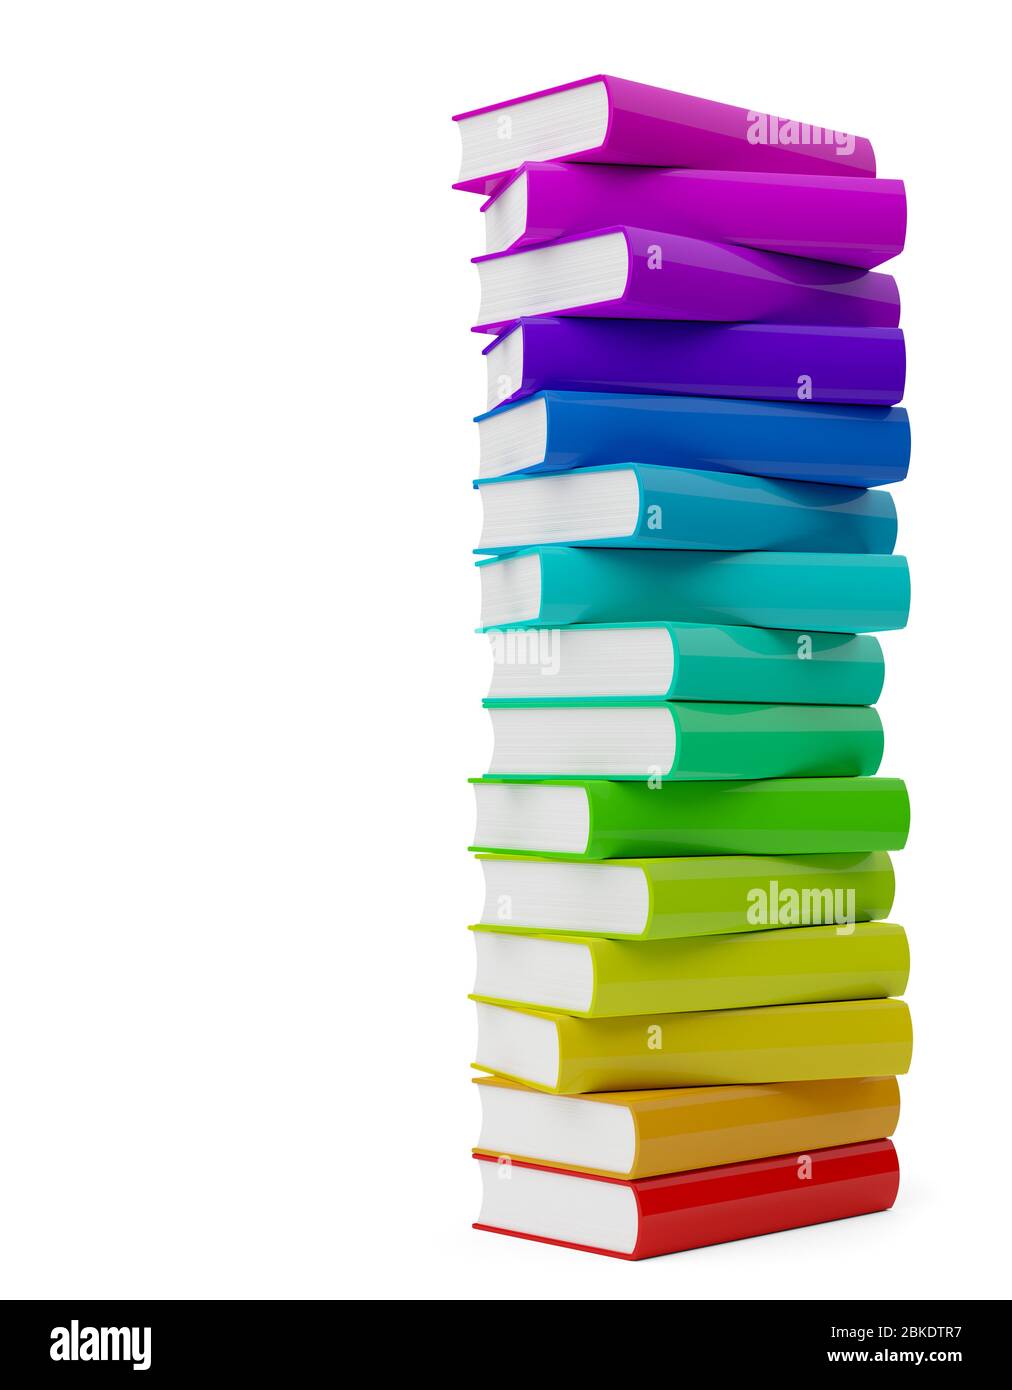 Bunte Regenbogen farbige Hardcover Bücher Stapel mit leeren Abdeckungen auf weißem Hintergrund - 3D-Illustration Stockfoto